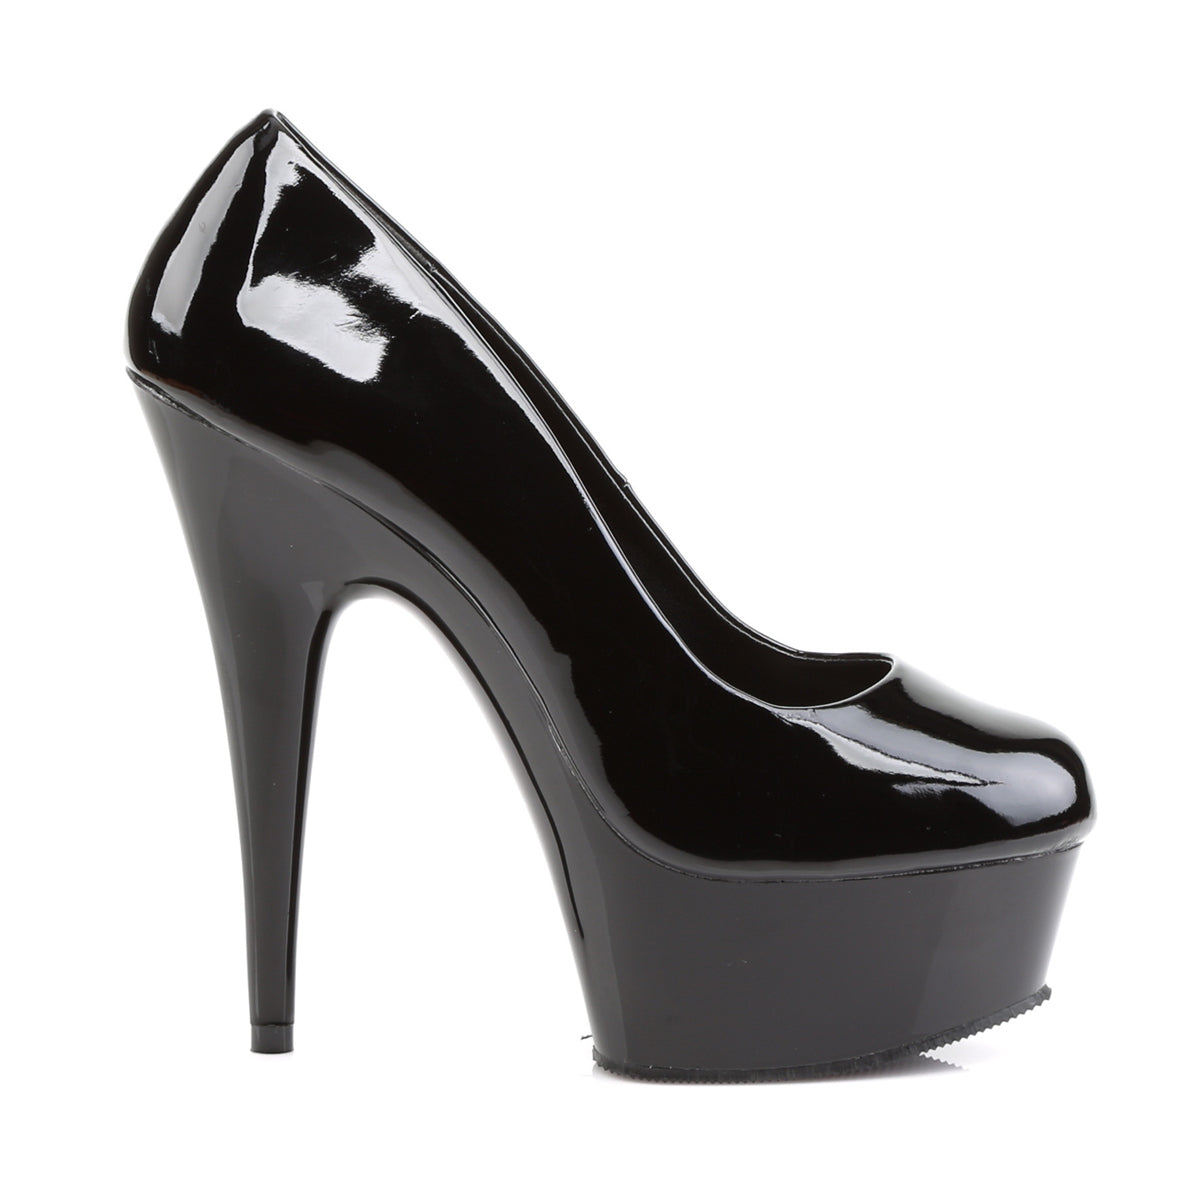 DELIGHT-685 Pleaser Black Patent Platform Shoes [Exotic Dance Shoes]